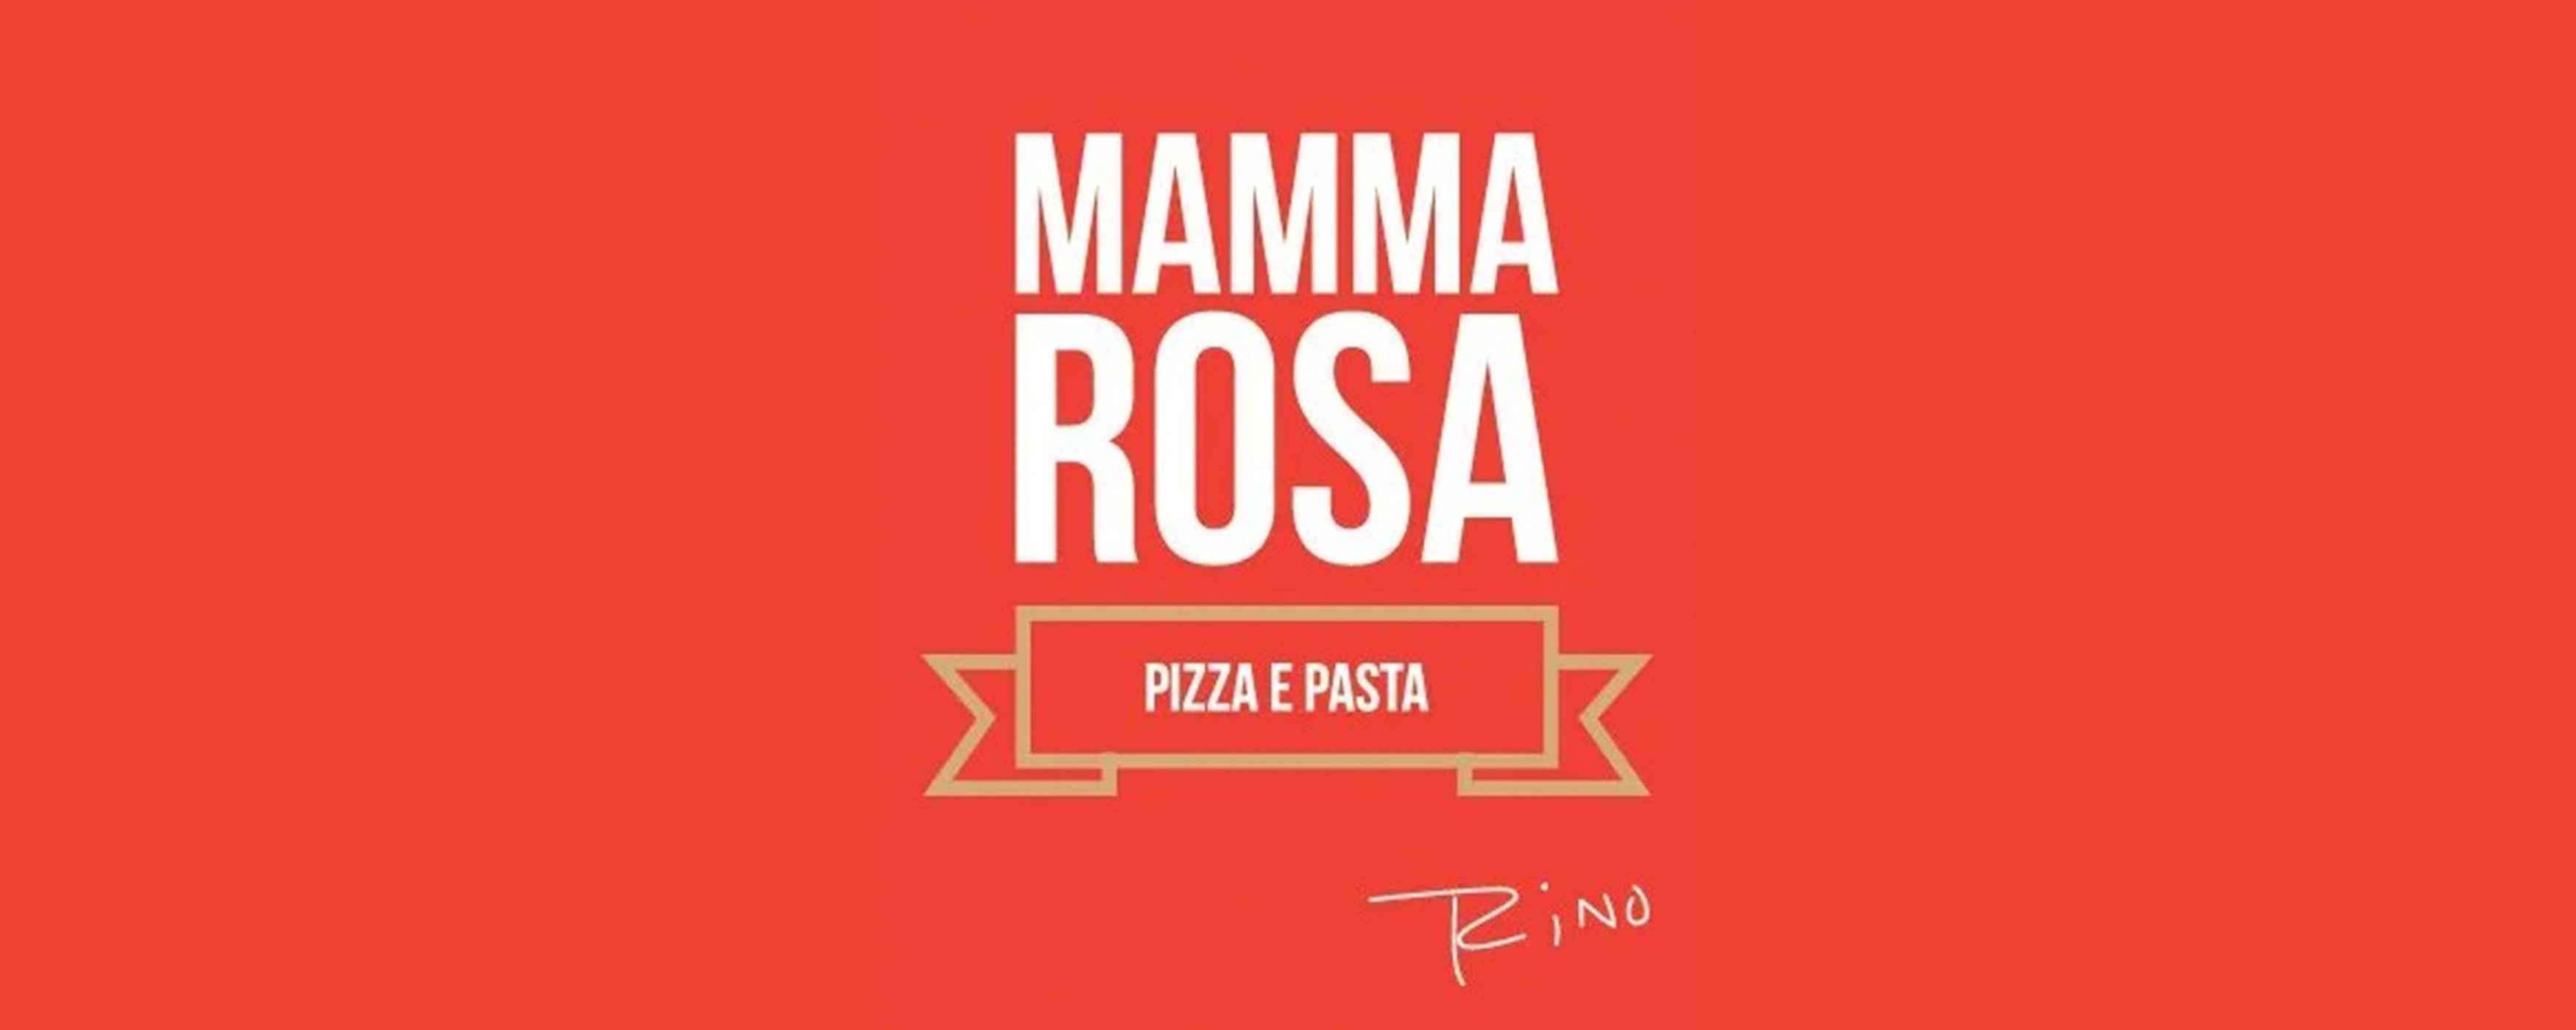 Mamma Rosa Pizza E Pasta